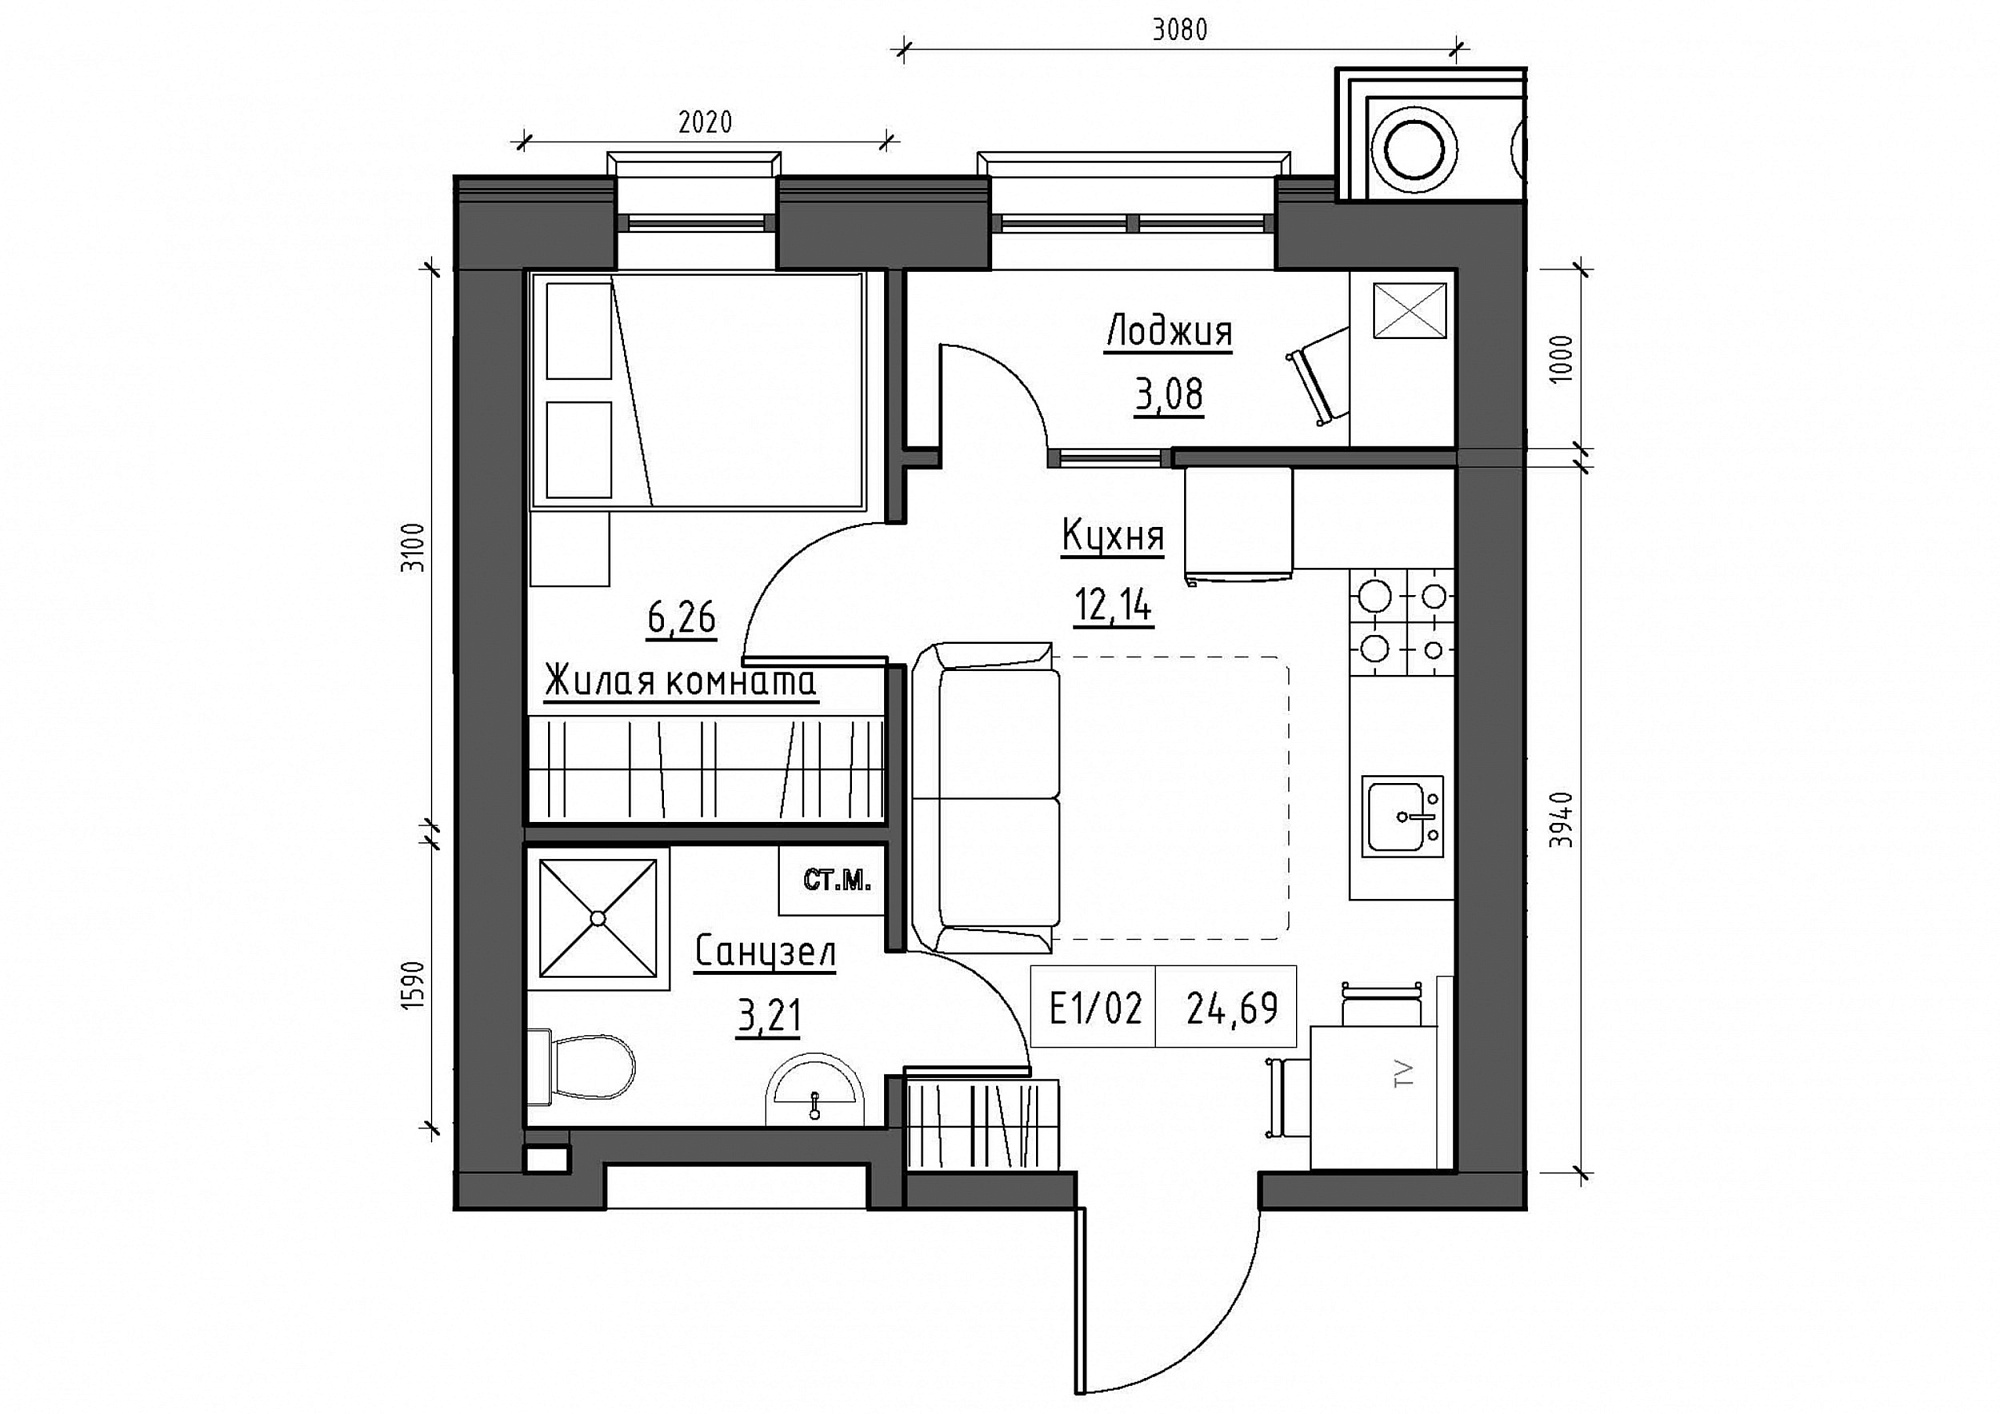 Планування 1-к квартира площею 24.69м2, KS-011-03/0014.